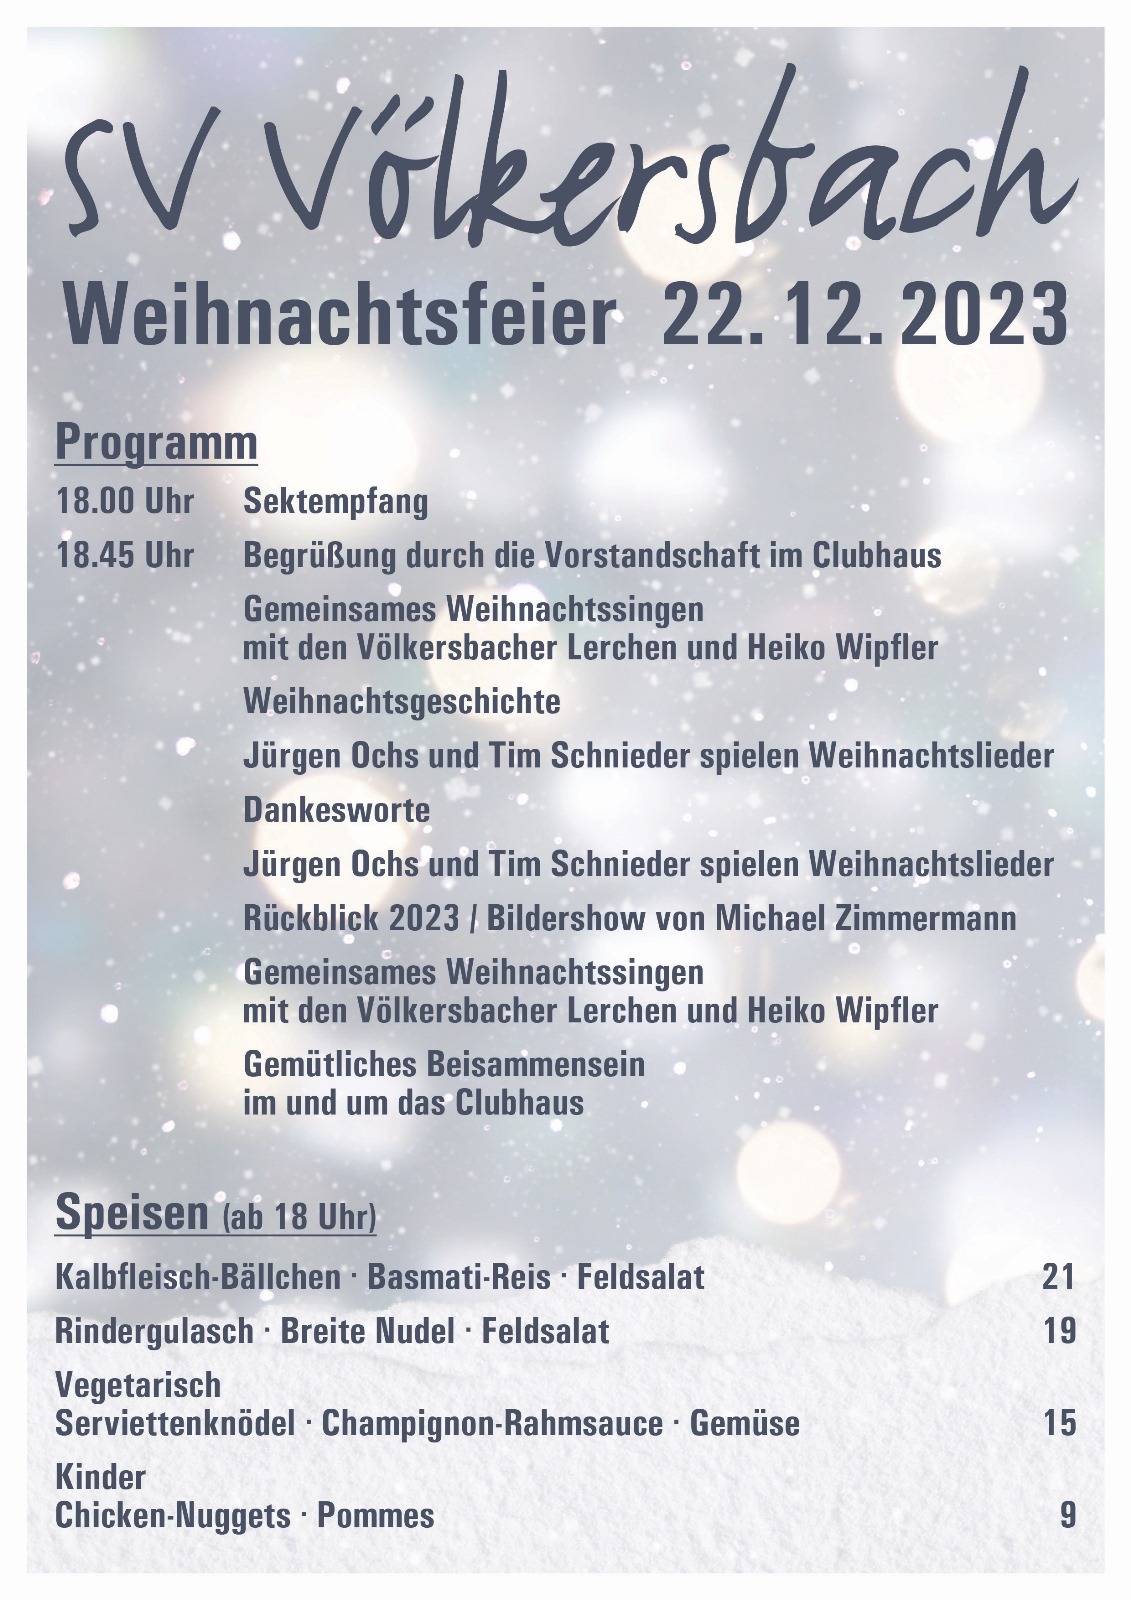 Weihnachtsfeier 2023 - Programm und Speisen